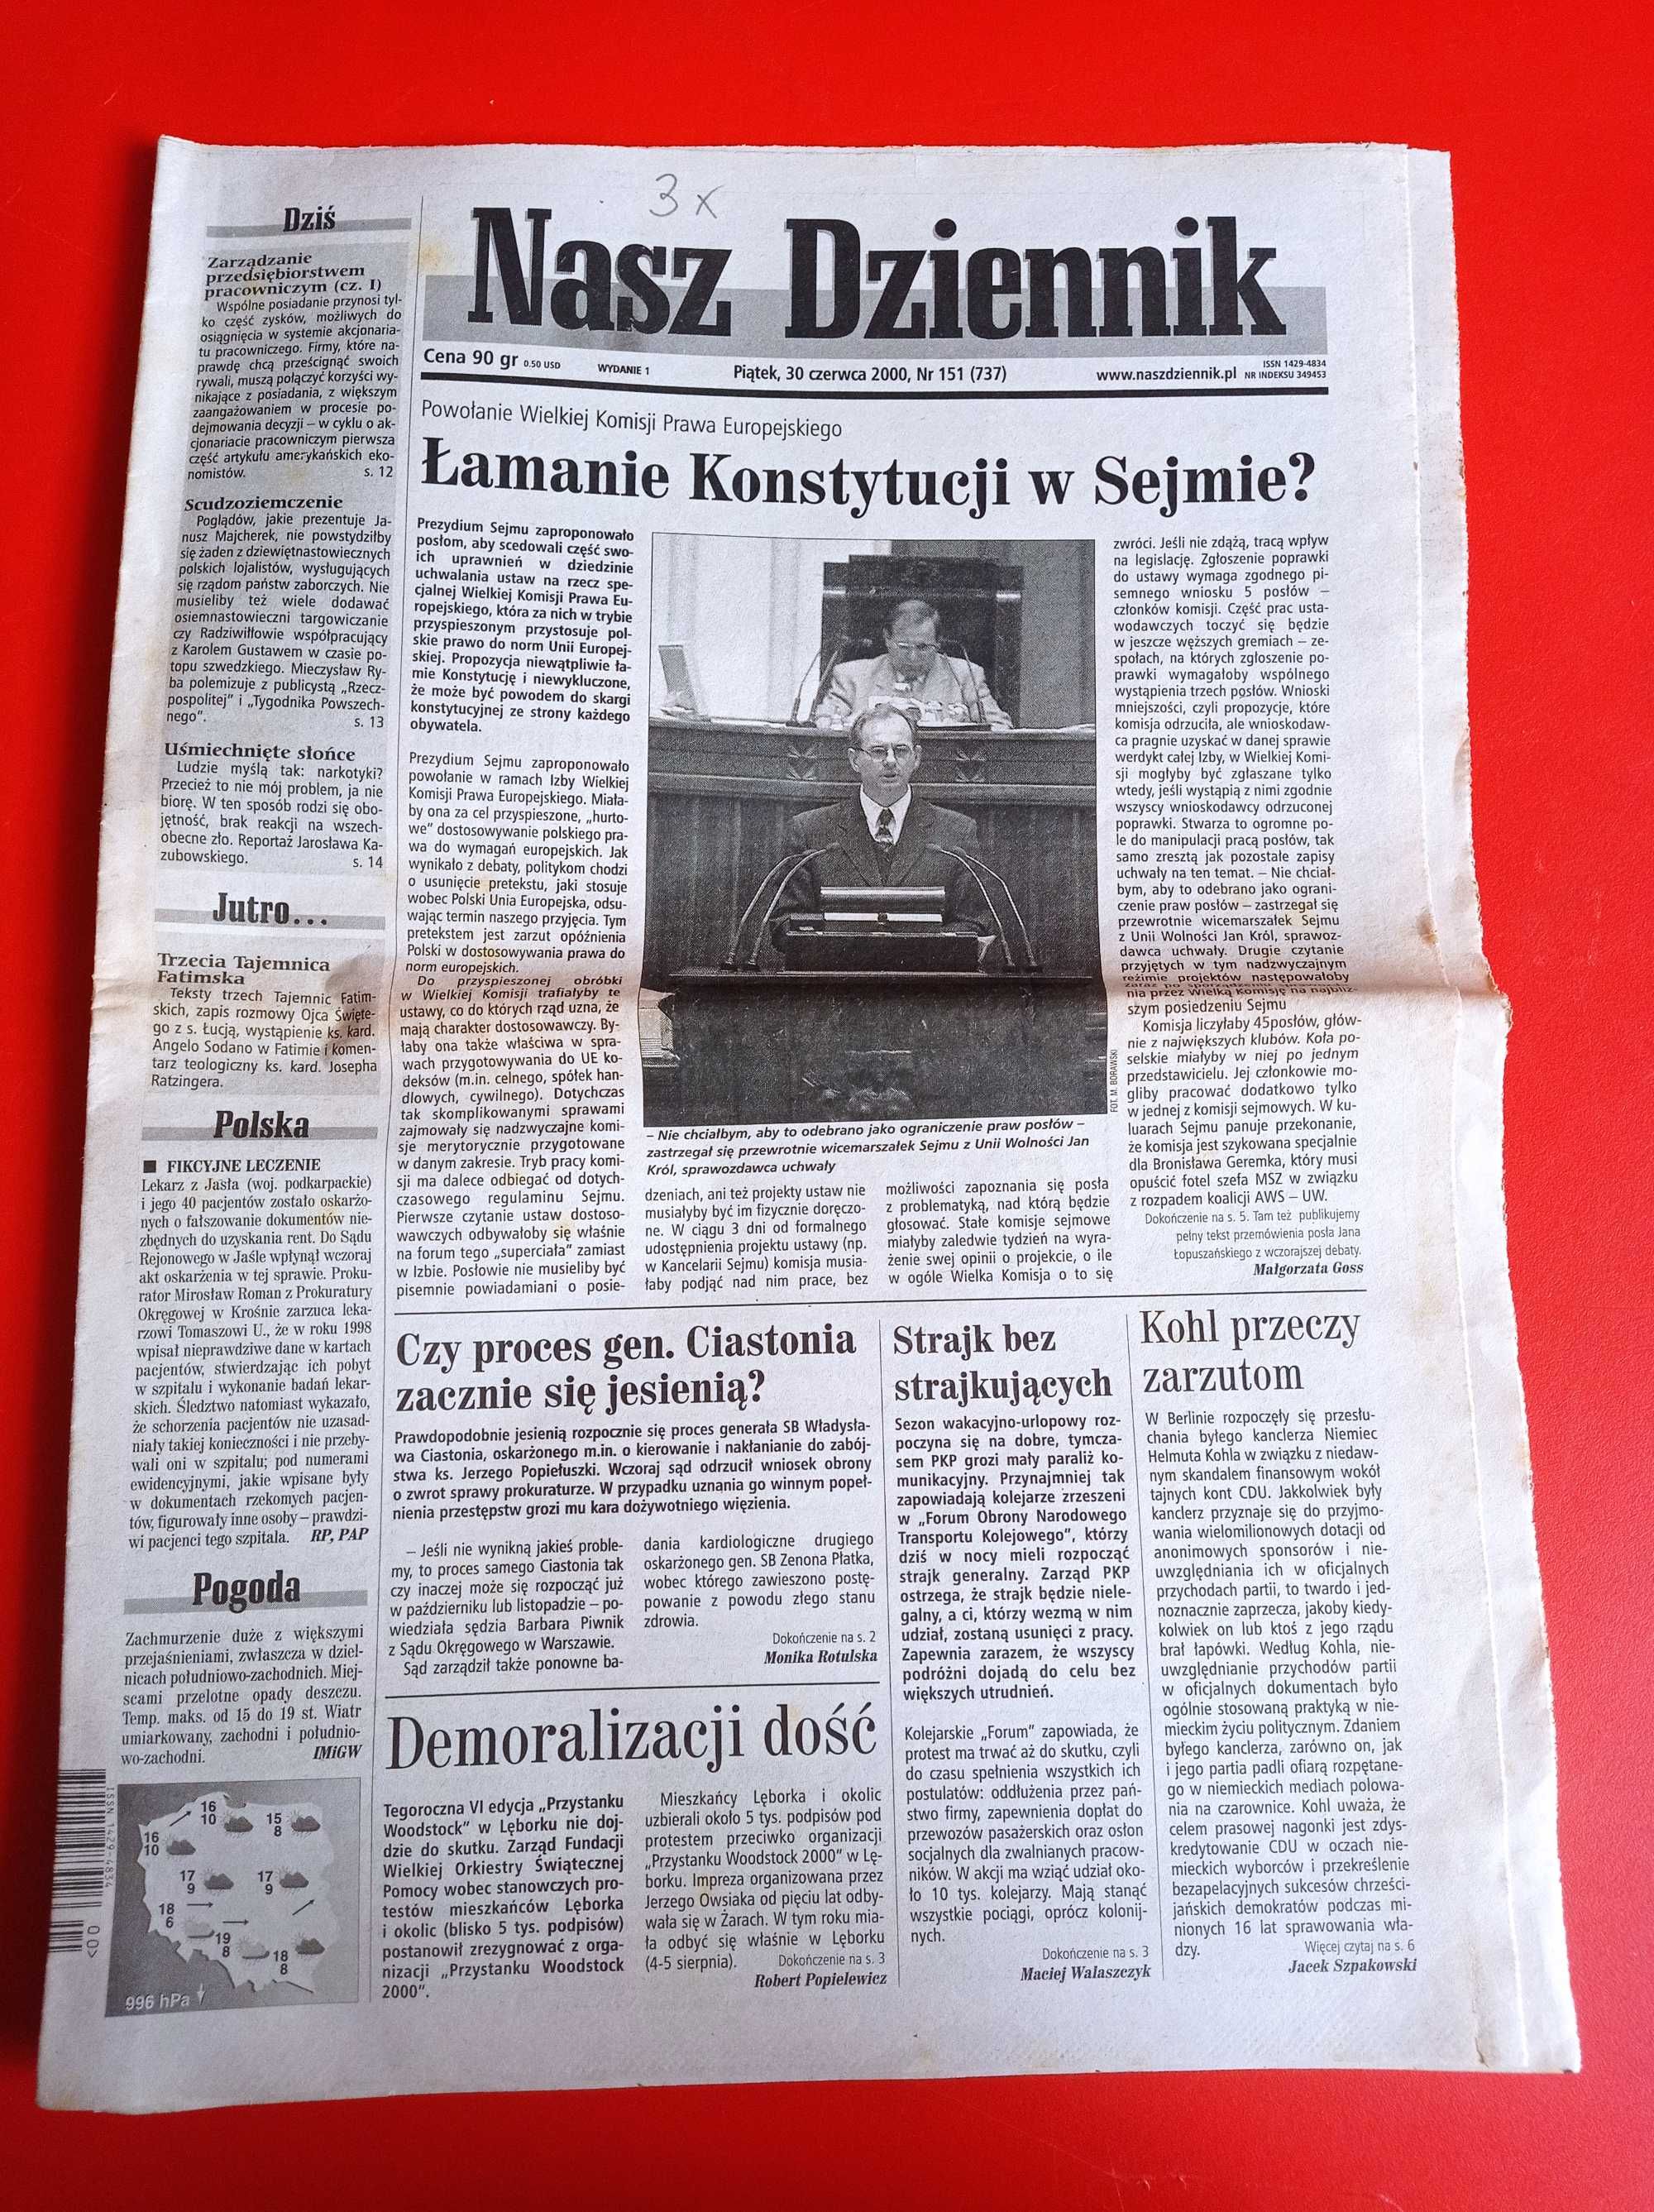 Nasz Dziennik, nr 151/2000, 30 czerwca 2000